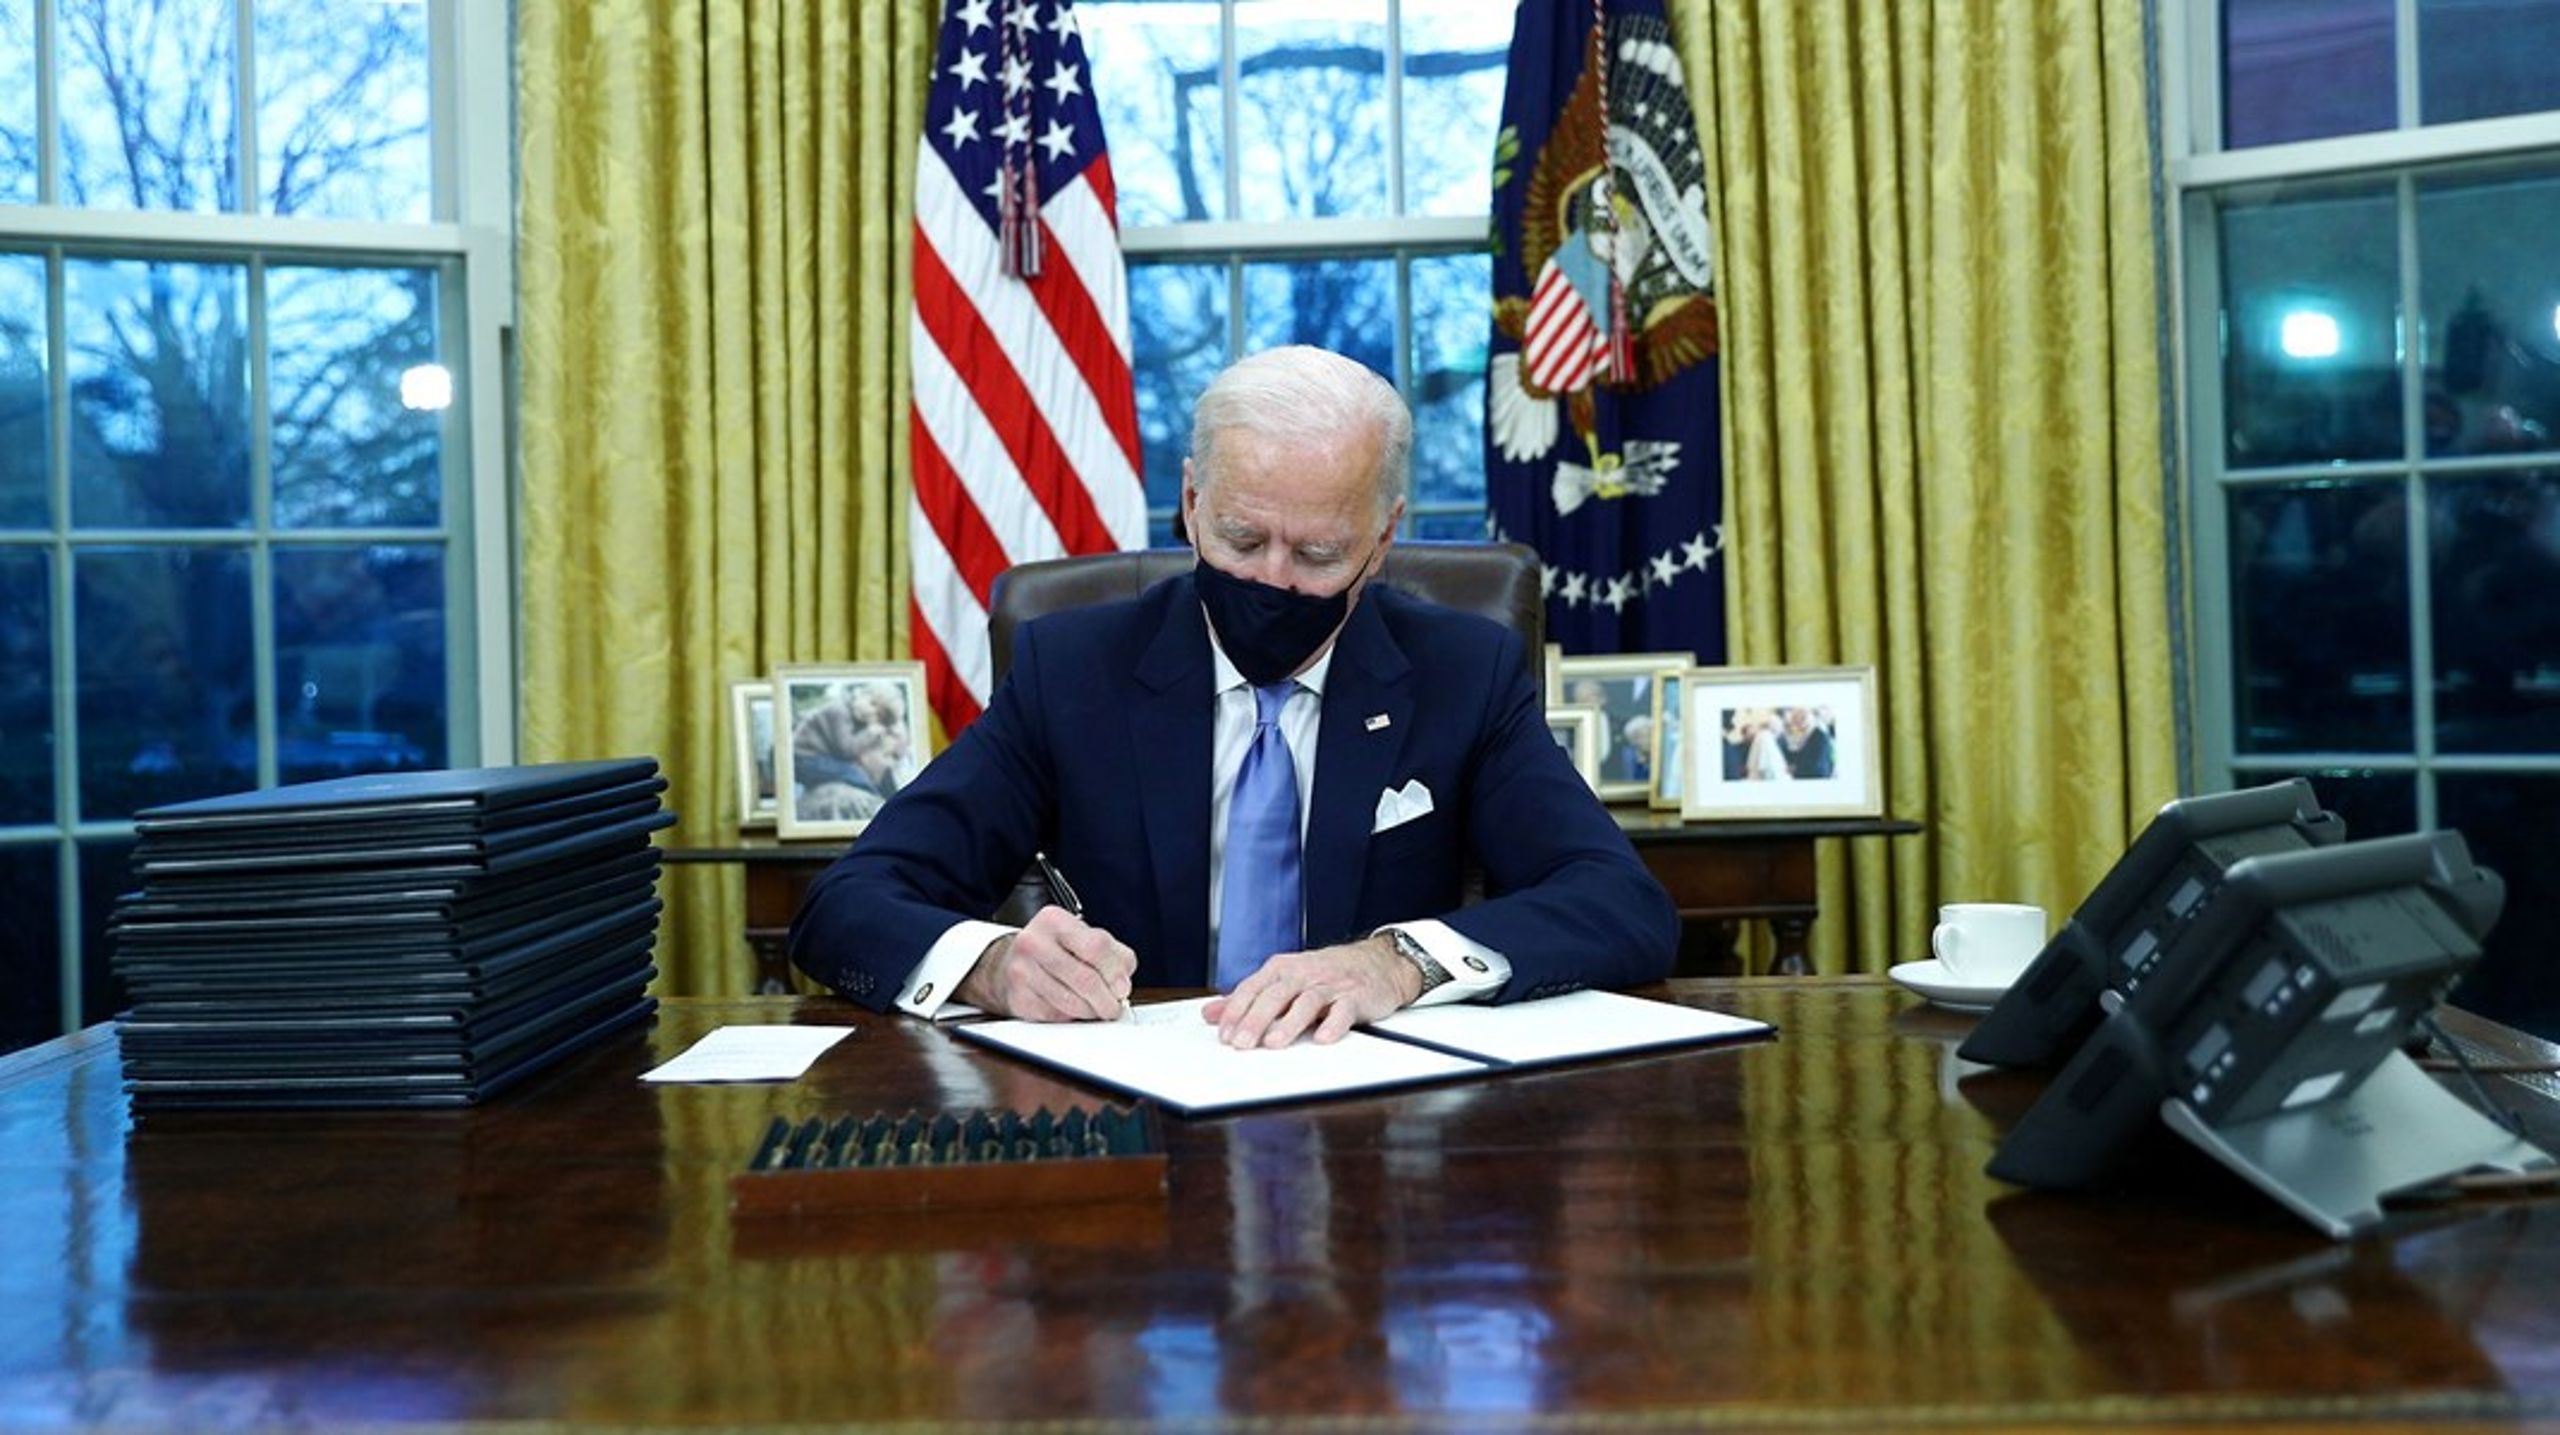 Allerede på sin første dag som præsident underskrev Joe Biden onsdag et dekret, der bringer USA tilbage til den internationale klimaaftale fra Paris. Det udløser glæde i Europa.